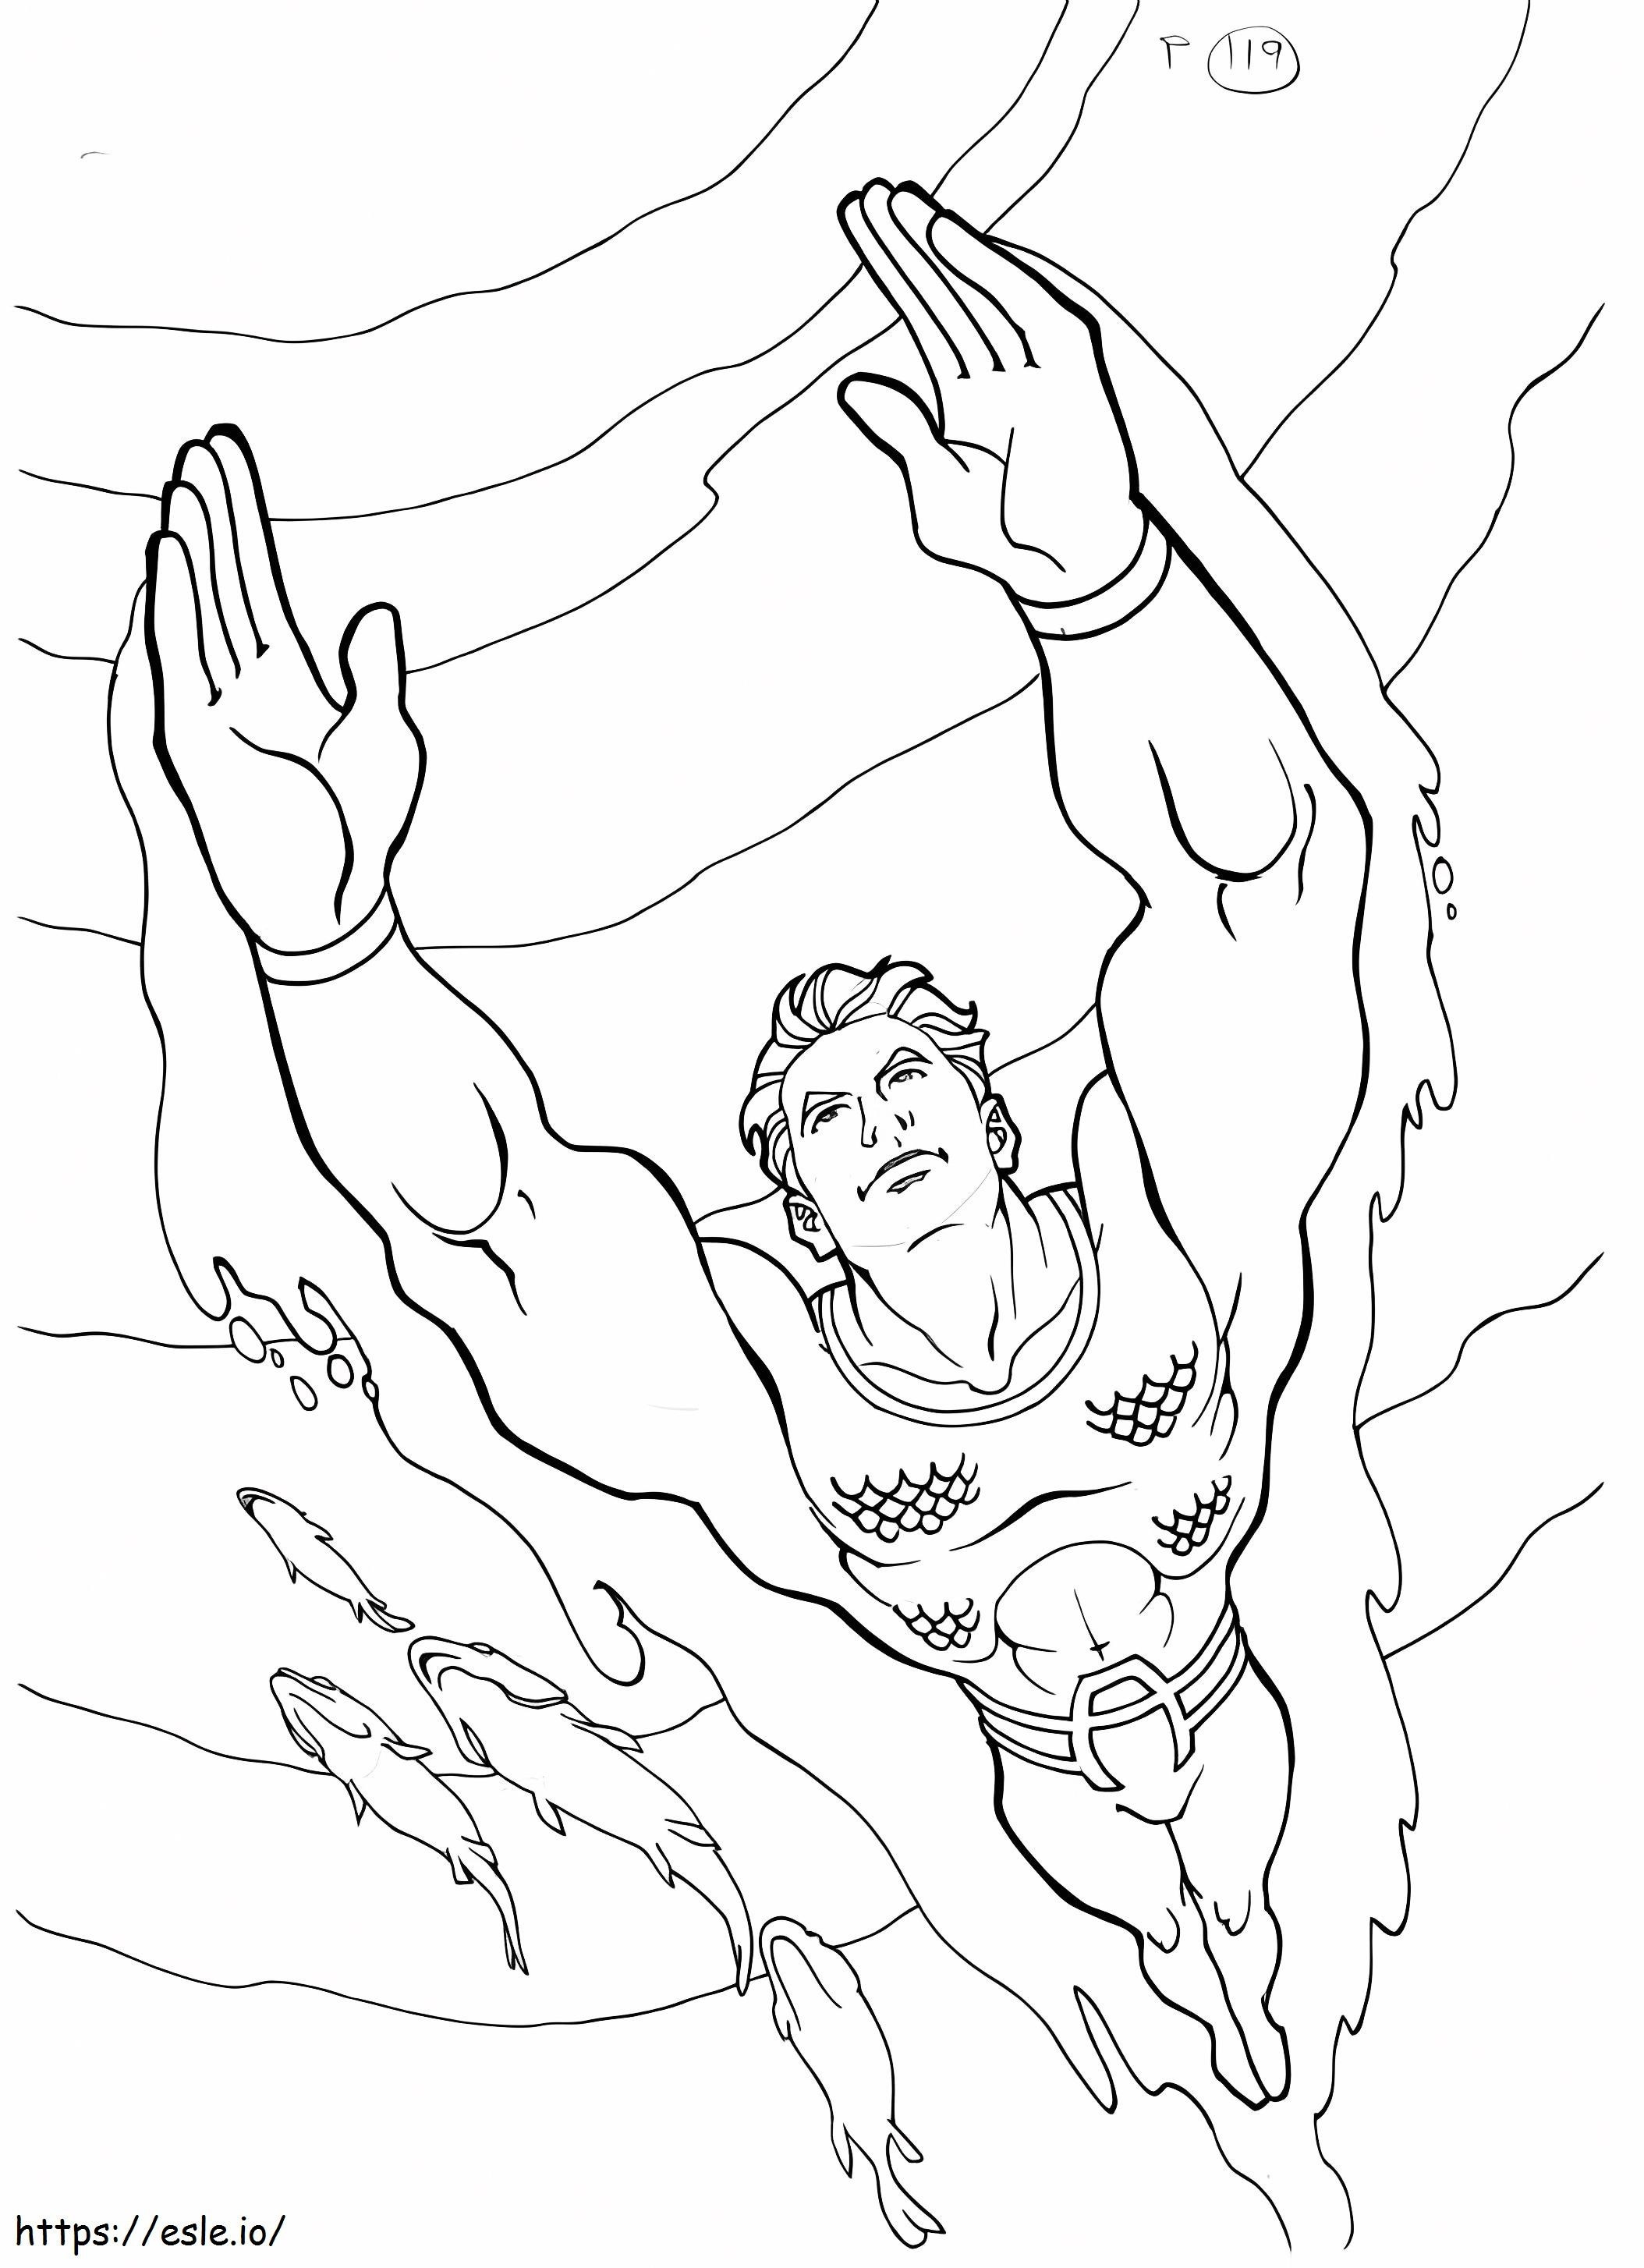 Aquaman 4 coloring page